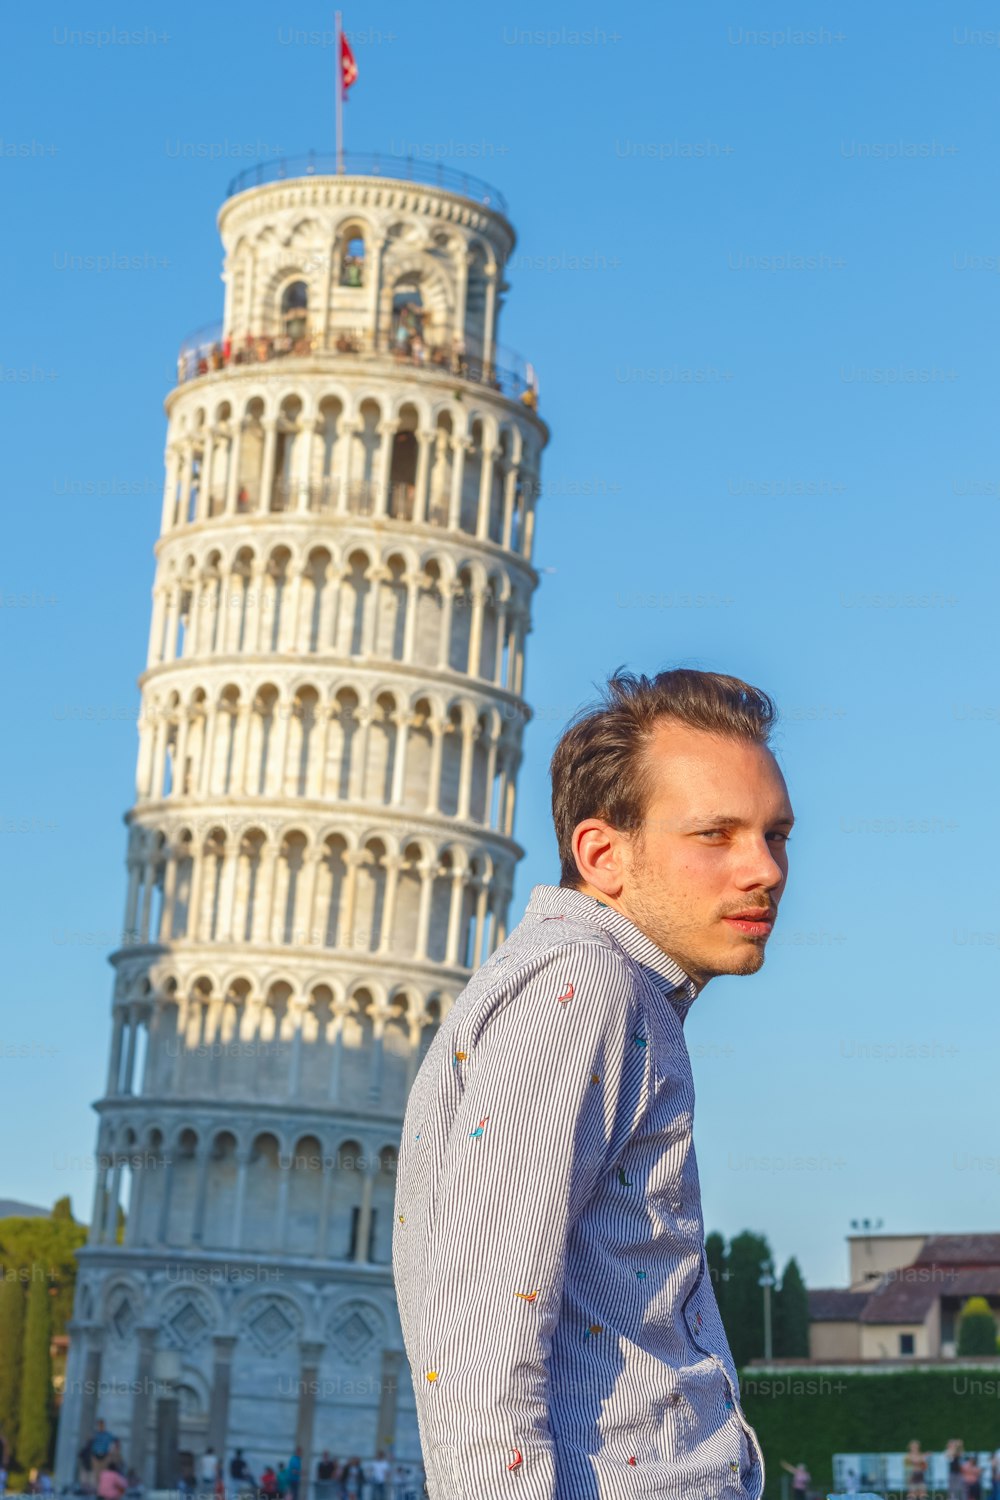 백인 청년이 이탈리아 피사의 사탑 앞에서 포즈를 취하고 있다